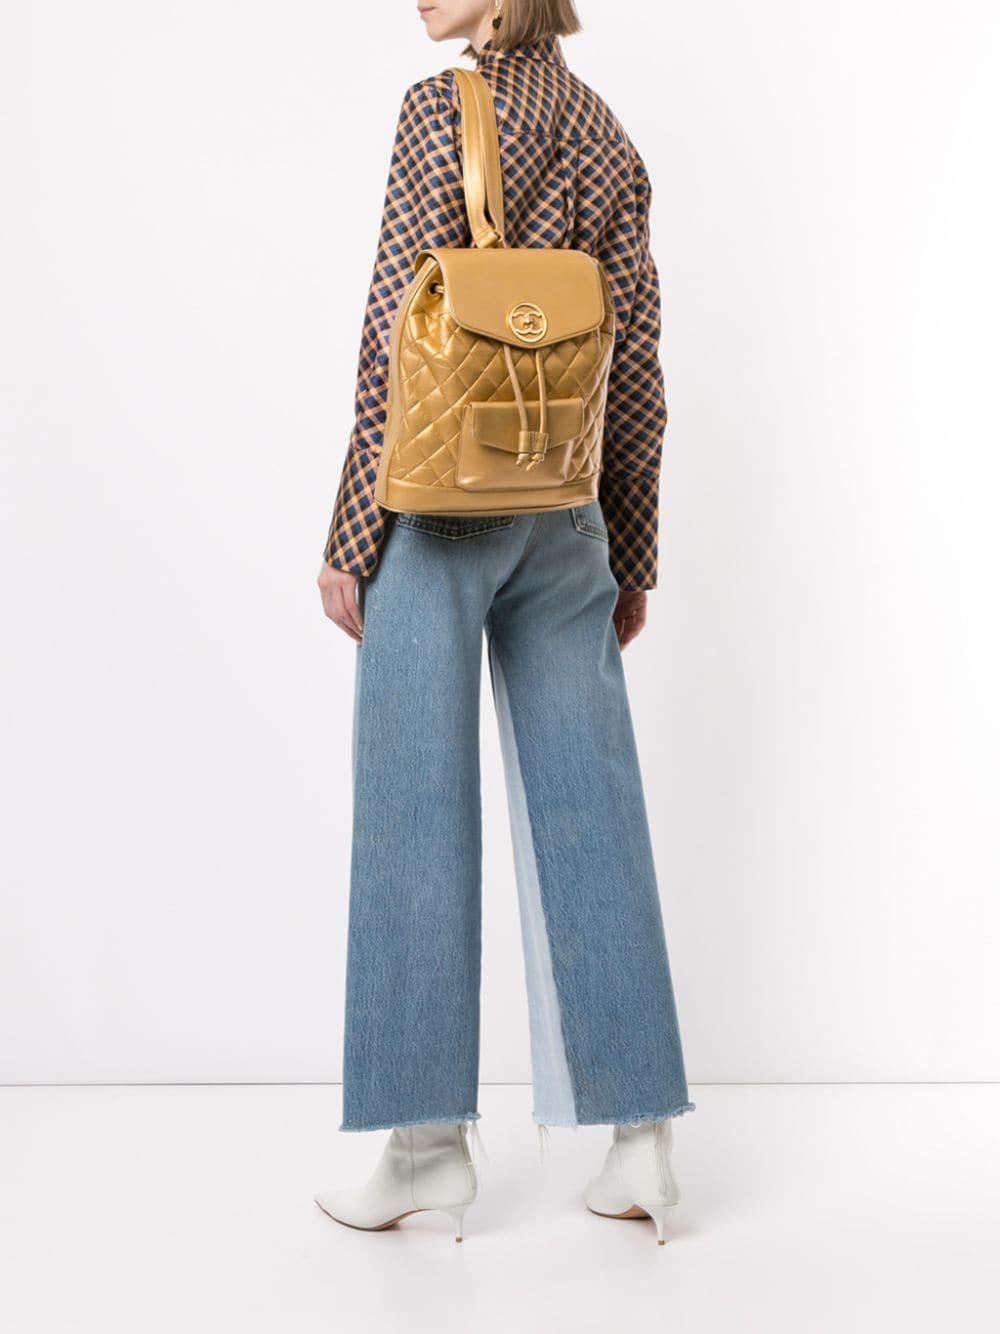 Vers 1991-1994. Ce sac à dos vintage Chanel en cuir matelassé est doté d'une quincaillerie de couleur dorée, d'une double sangle en cuir et en chaîne entrelacée, d'une poche frontale plaquée, d'un rabat frontal avec une fermeture à bouton tournant